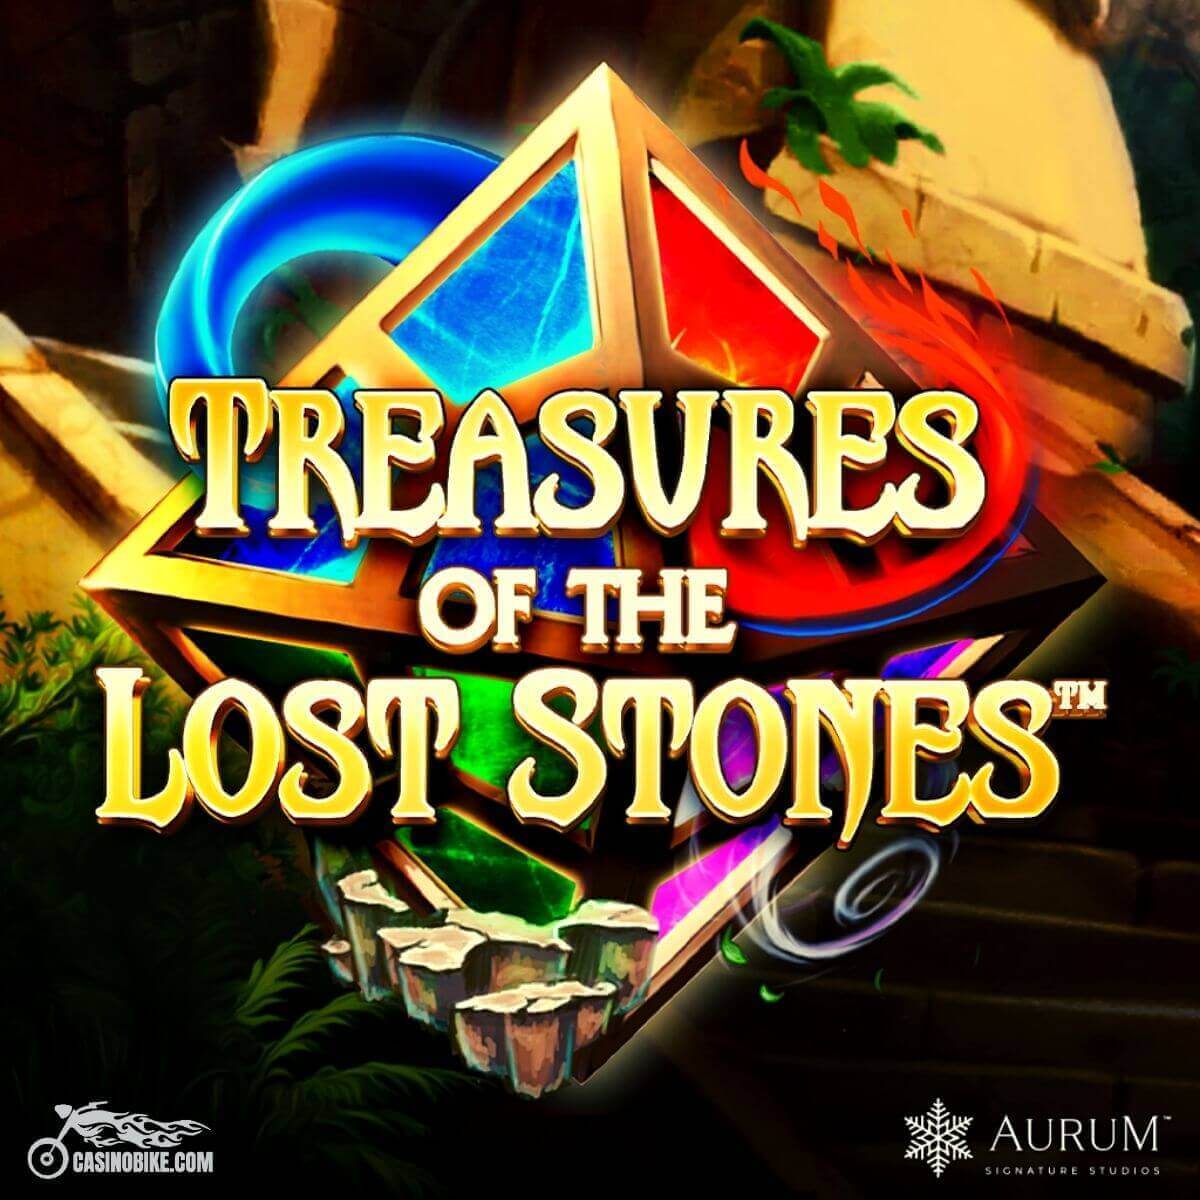 Treasures of the Lost Stones Slot by Aurum Signature Studios